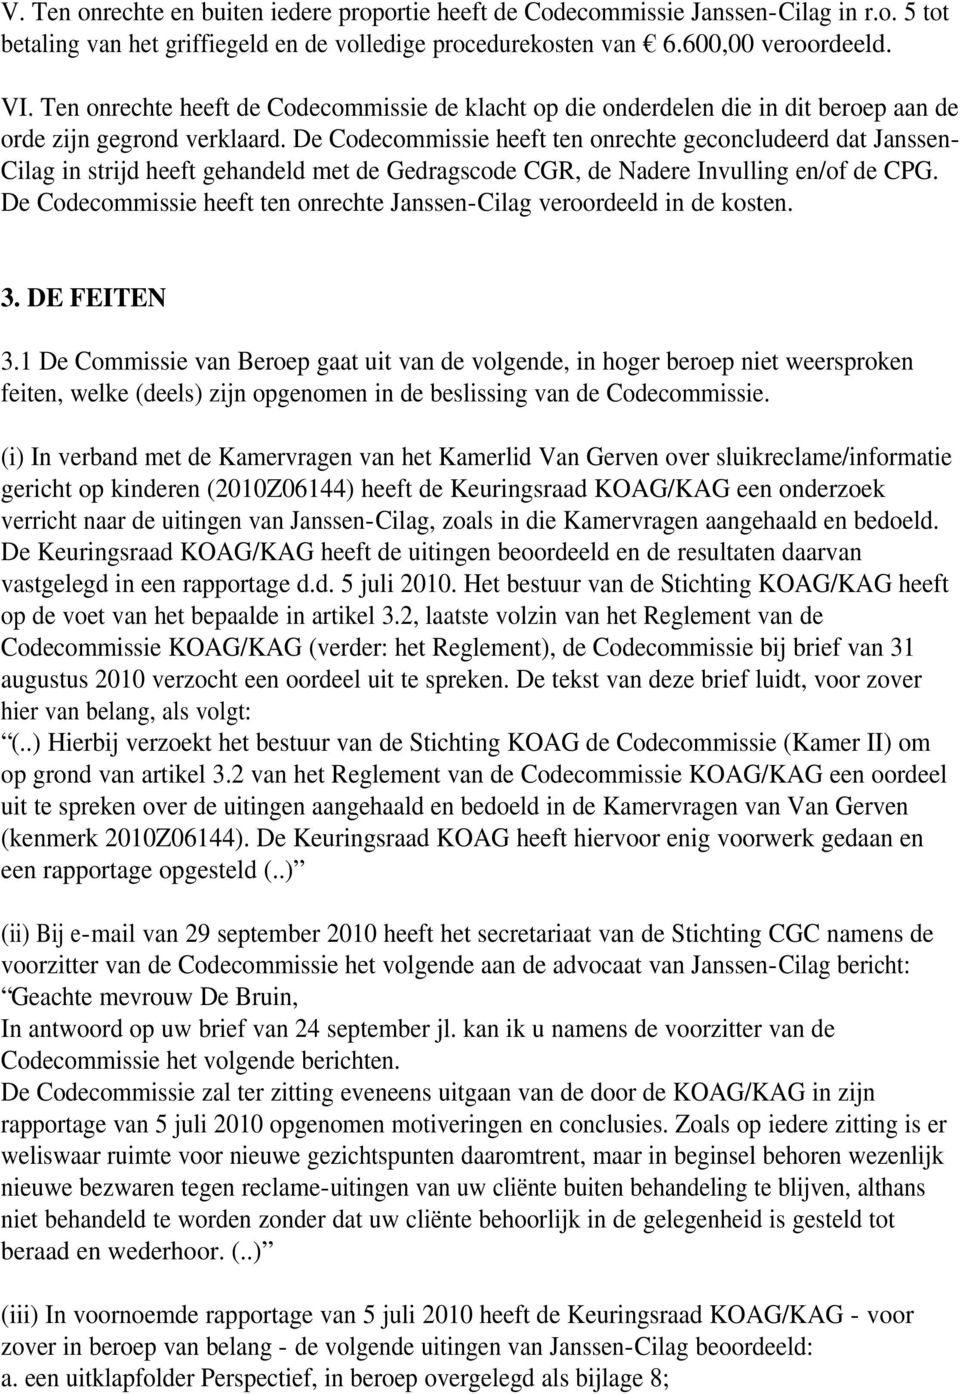 De Codecommissie heeft ten onrechte geconcludeerd dat Janssen- Cilag in strijd heeft gehandeld met de Gedragscode CGR, de Nadere Invulling en/of de CPG.